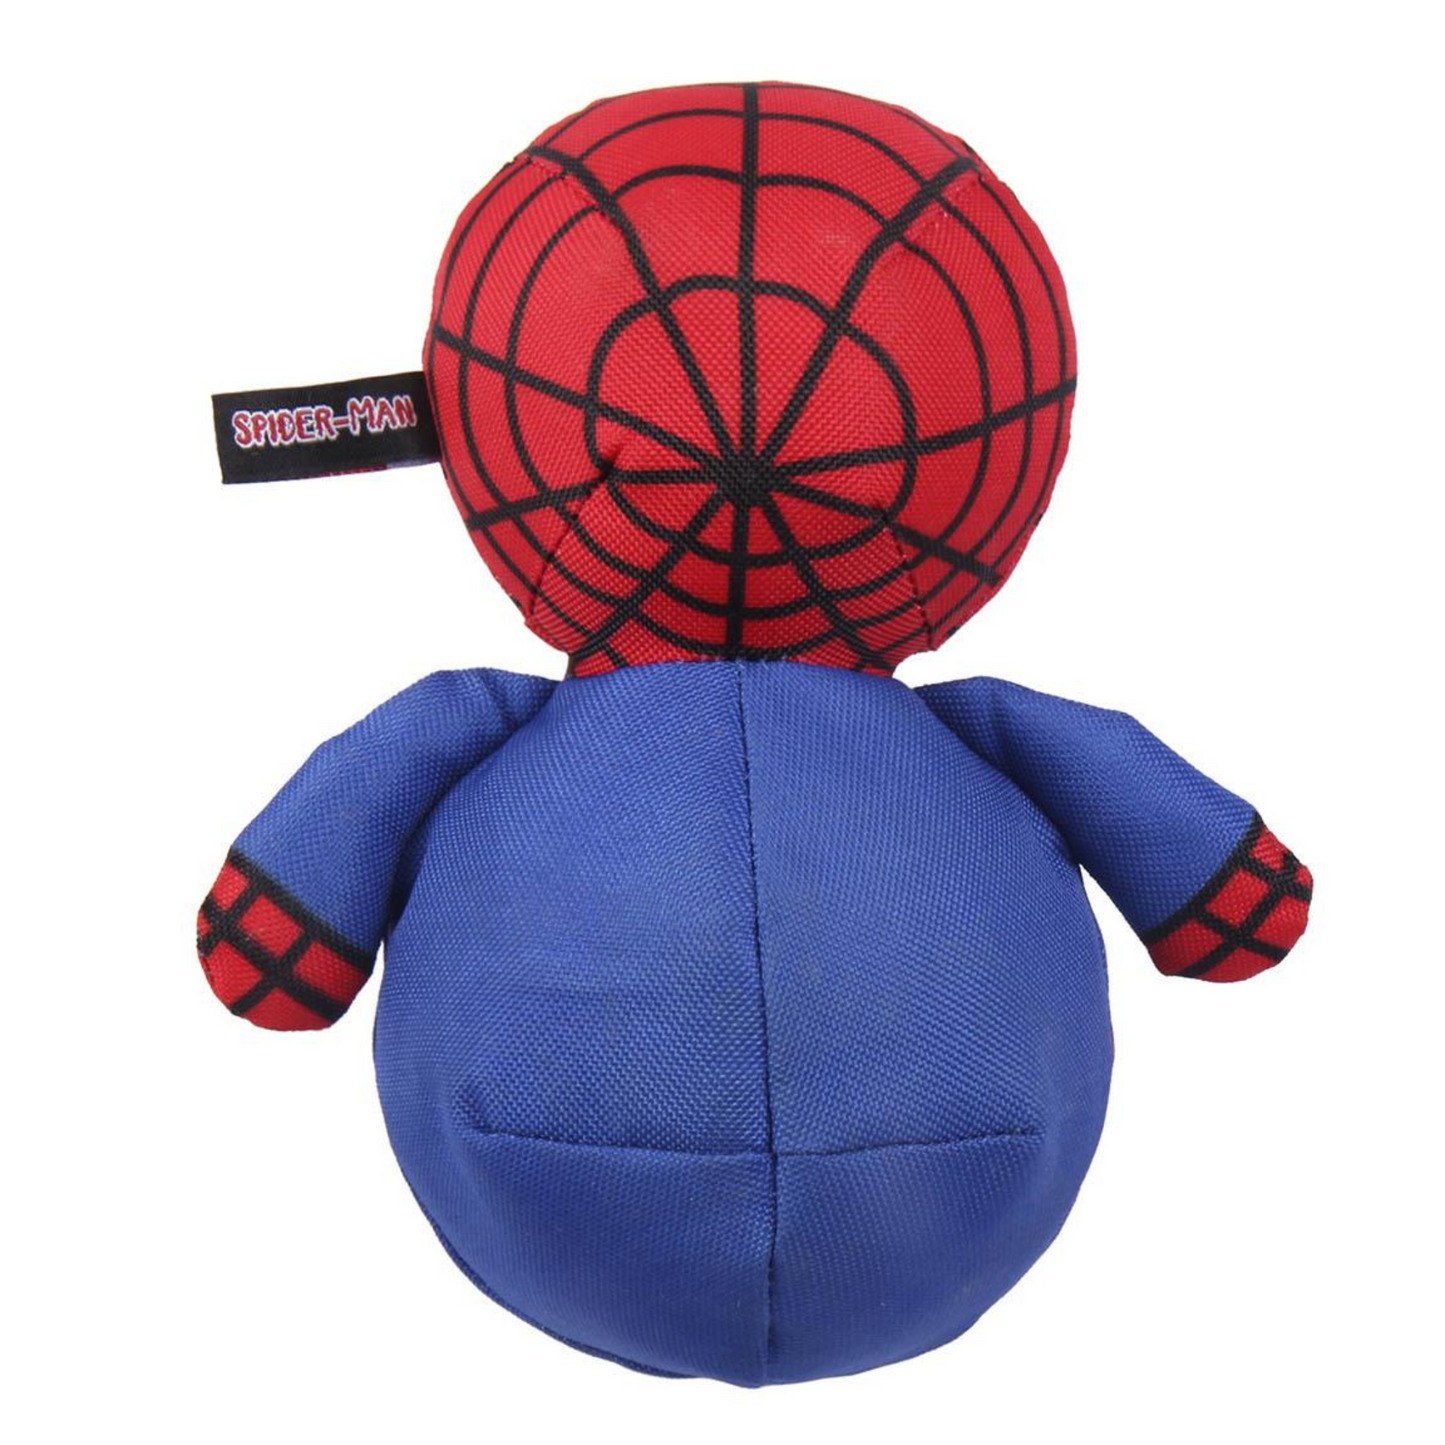 Spider-Man Dog Toy